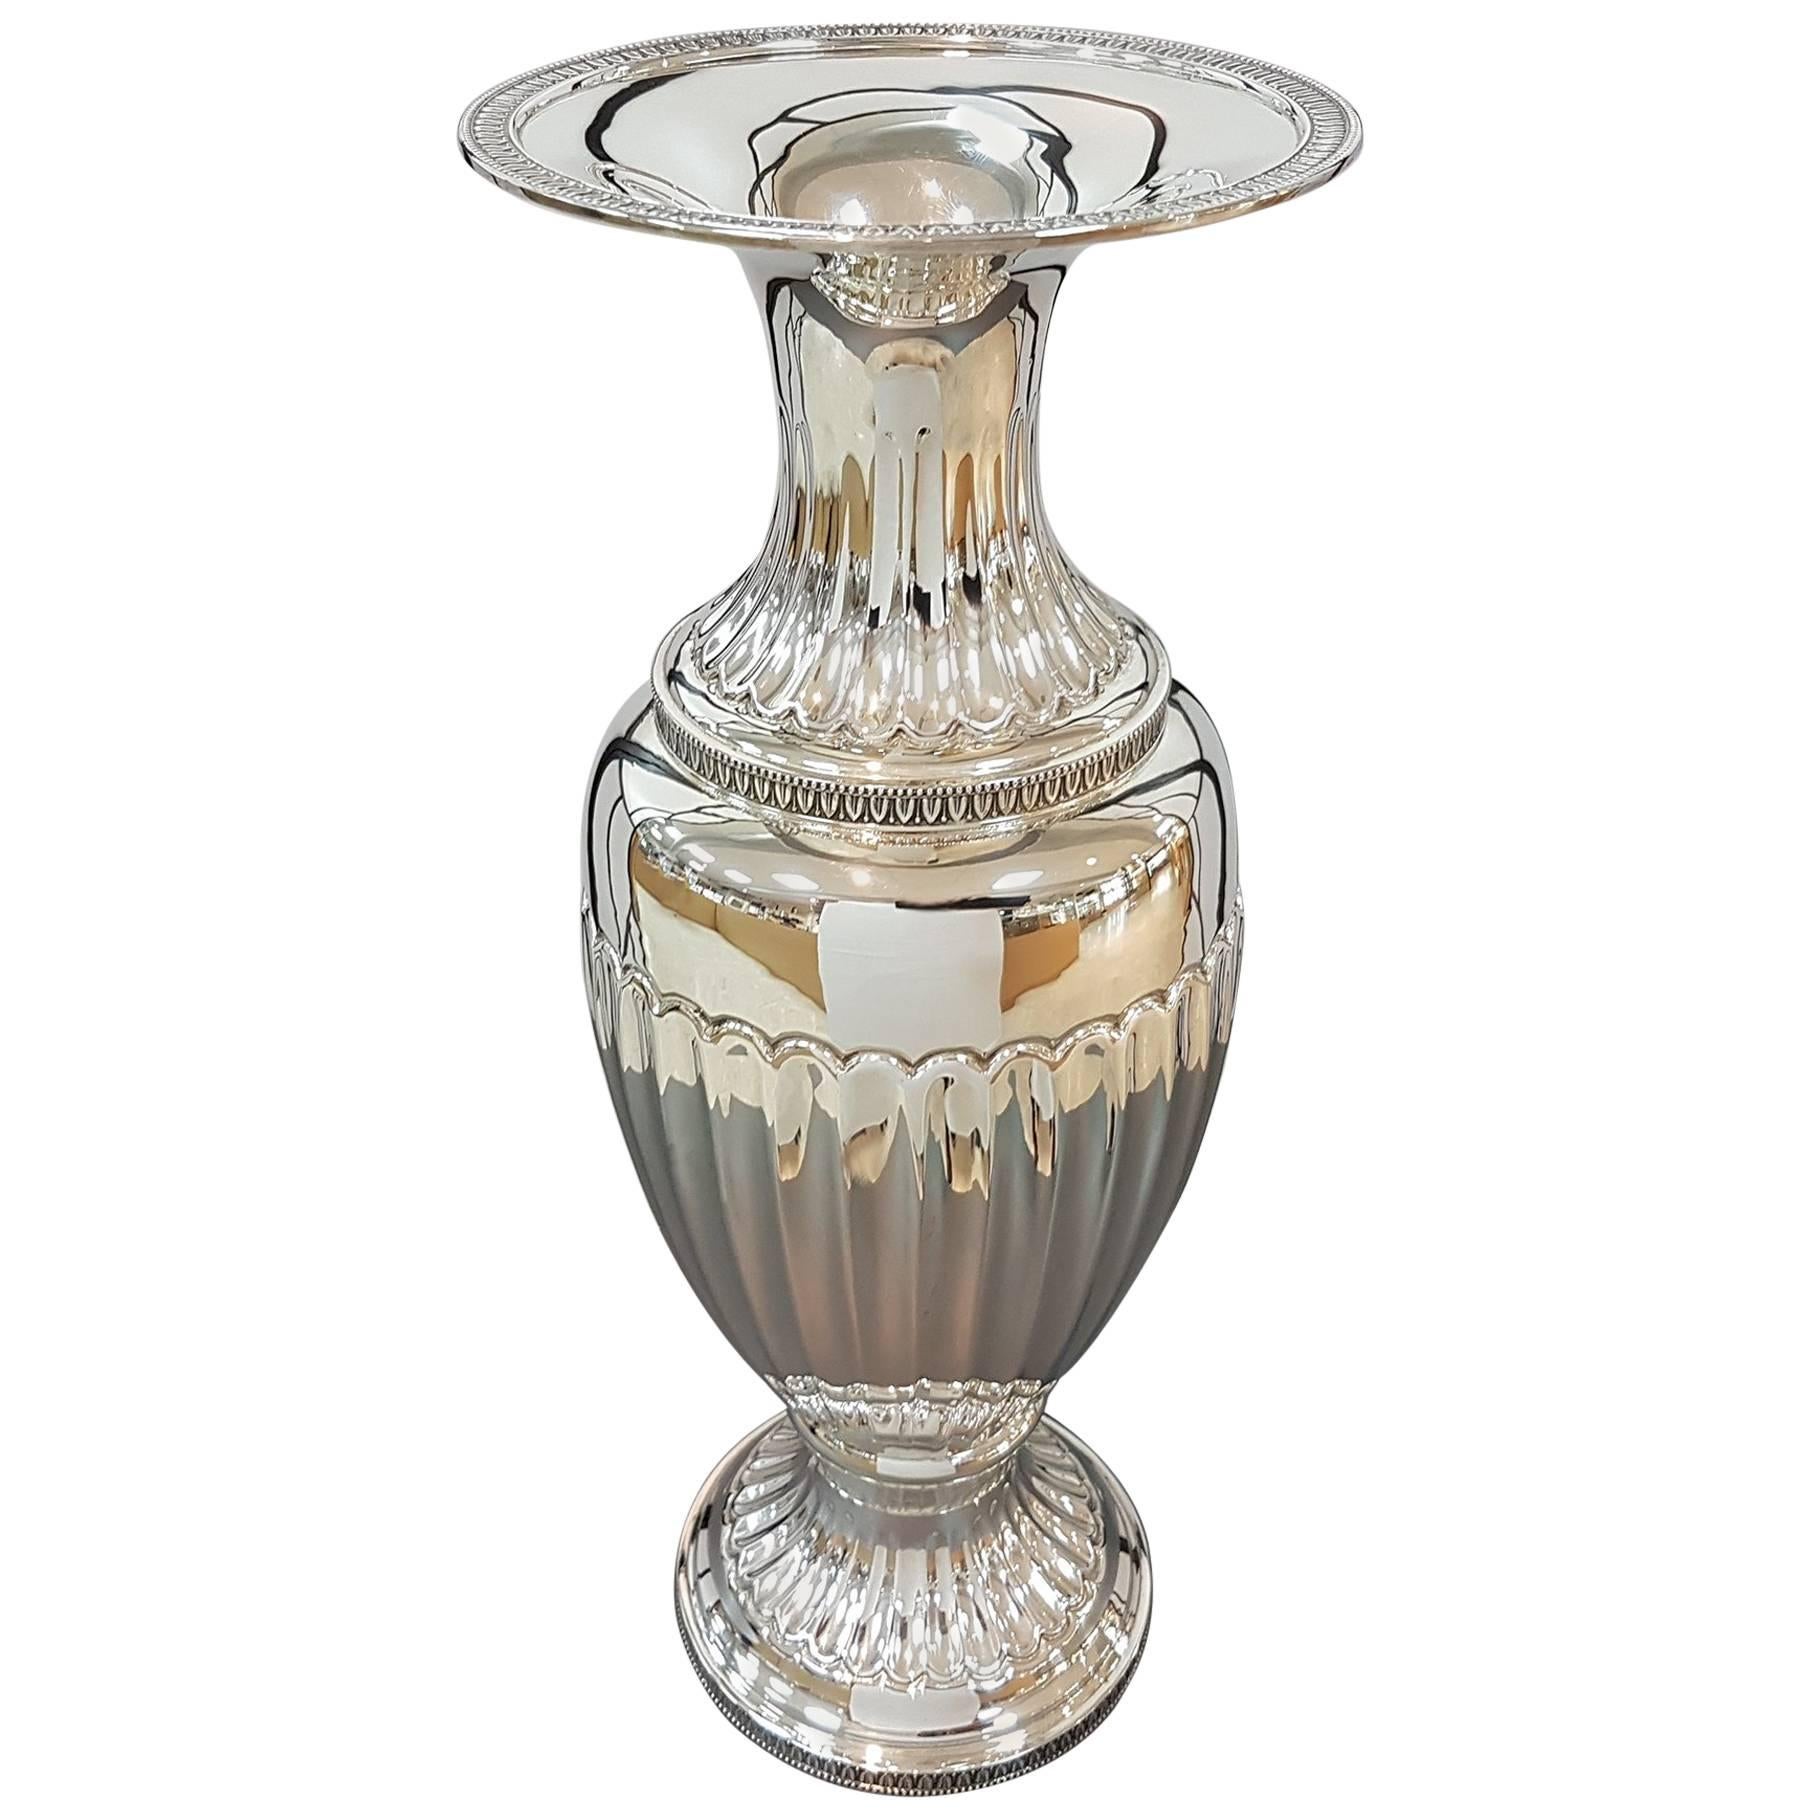 20th Century Empire Revival Italian Silver Vase For Sale